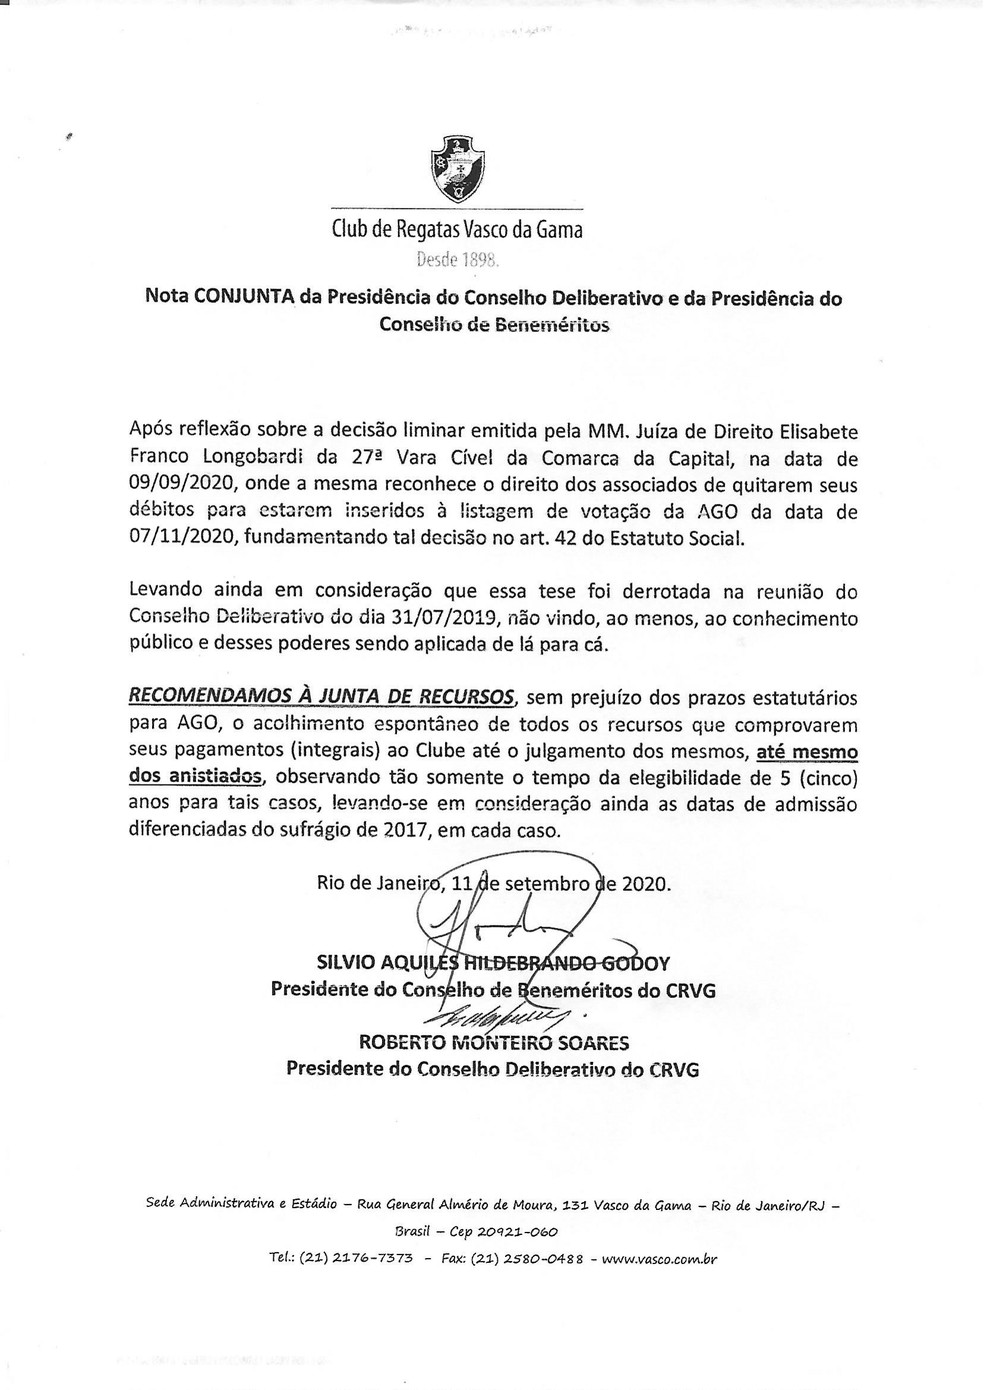 No último dia 11, Silvio Godoy e Roberto Monteiro recomendaram à Junta Recursal do Vasco acolhimento de recursos de anistiados — Foto: Reprodução